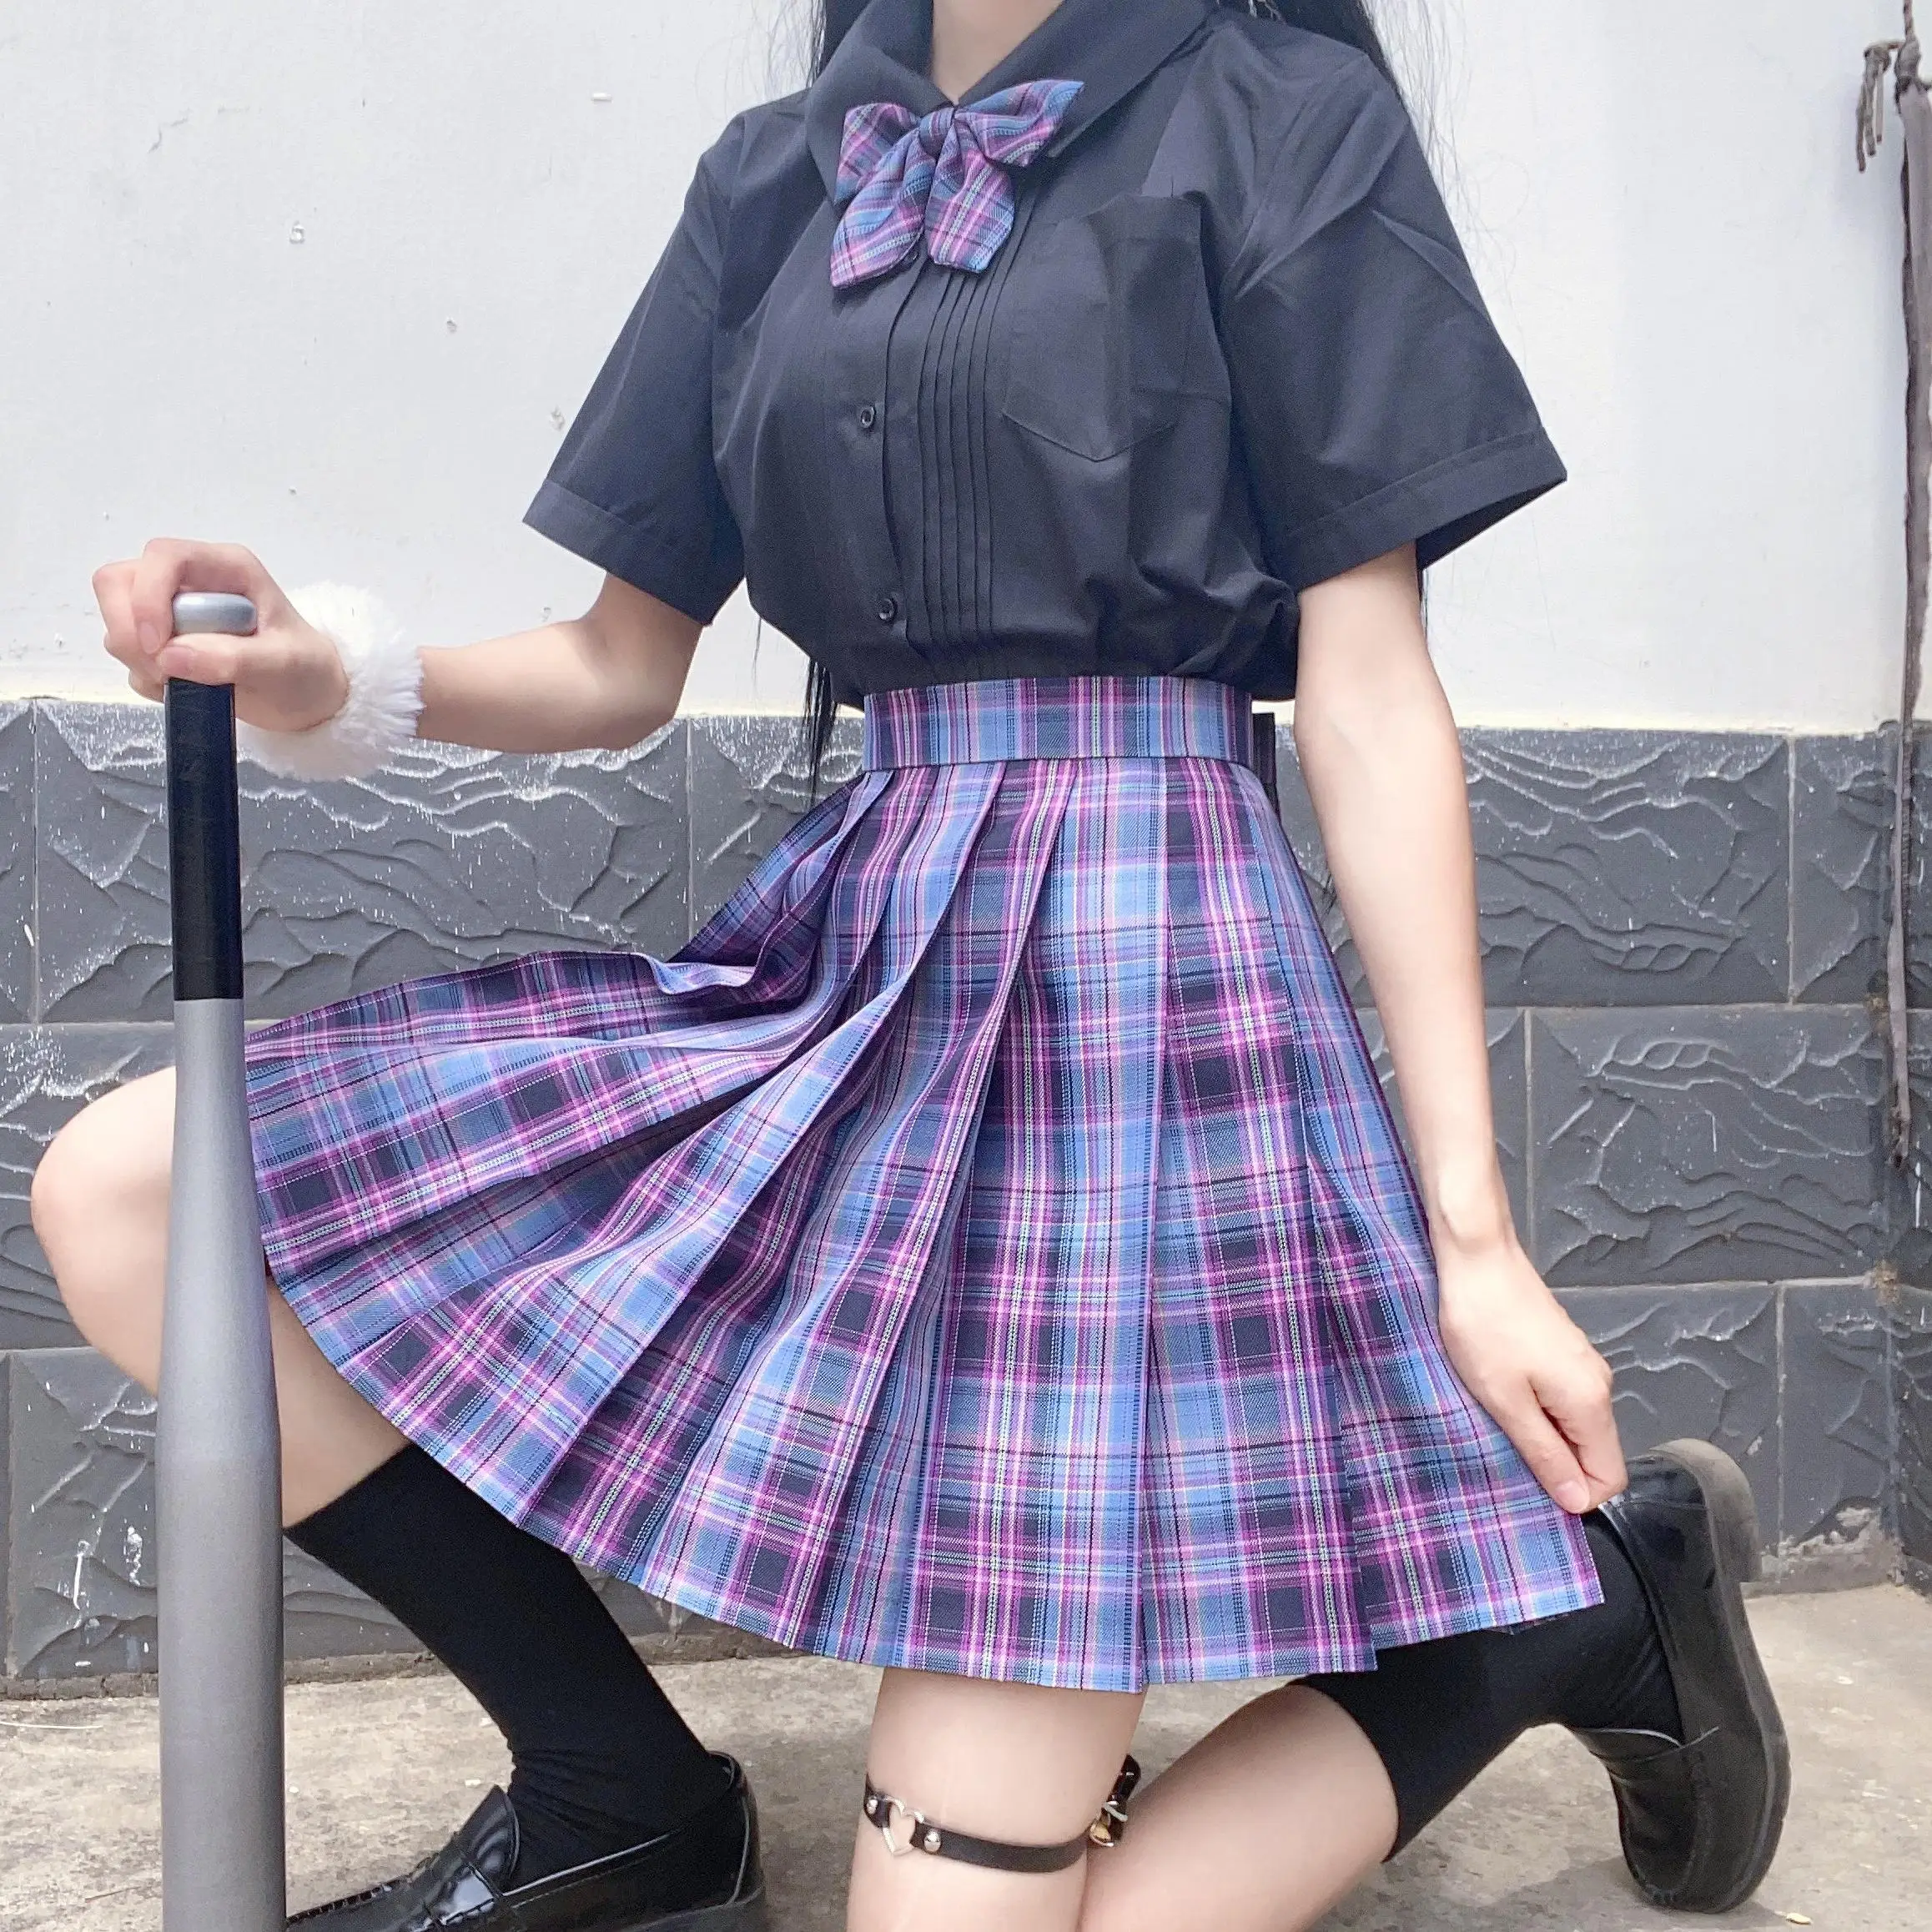 Venta caliente Falda plisada de cintura alta para mujer, minifalda Sexy de estilo coreano Harajuku japonés, púrpura y negro, a cuadros plisado, Cosplay JK DolGYpOWZQz